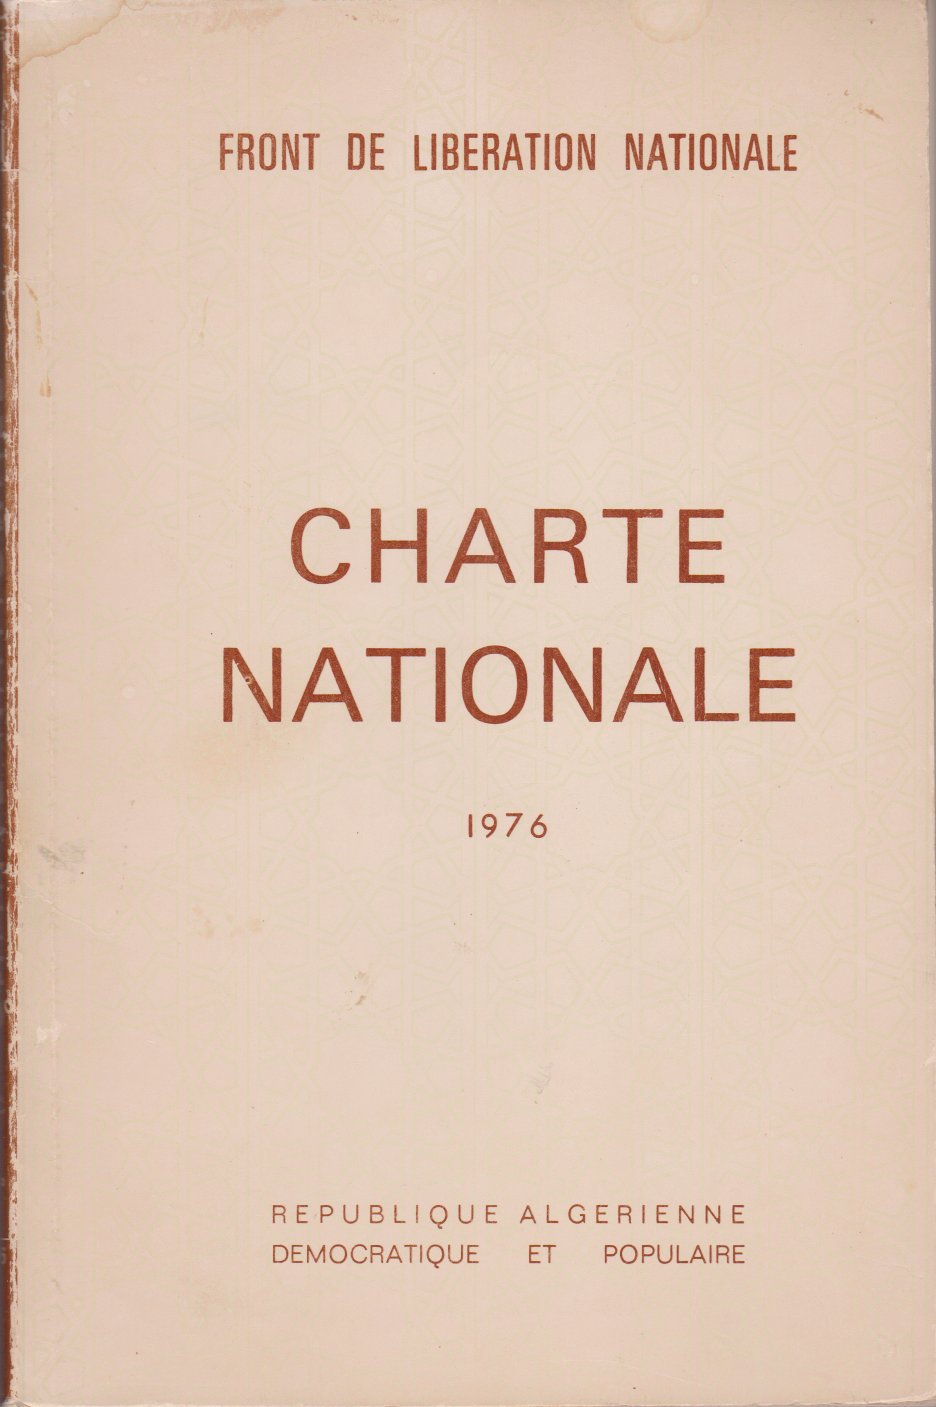 FRONT DE LIBERATION NATIONALE - CHARTE NATIONALE 1976